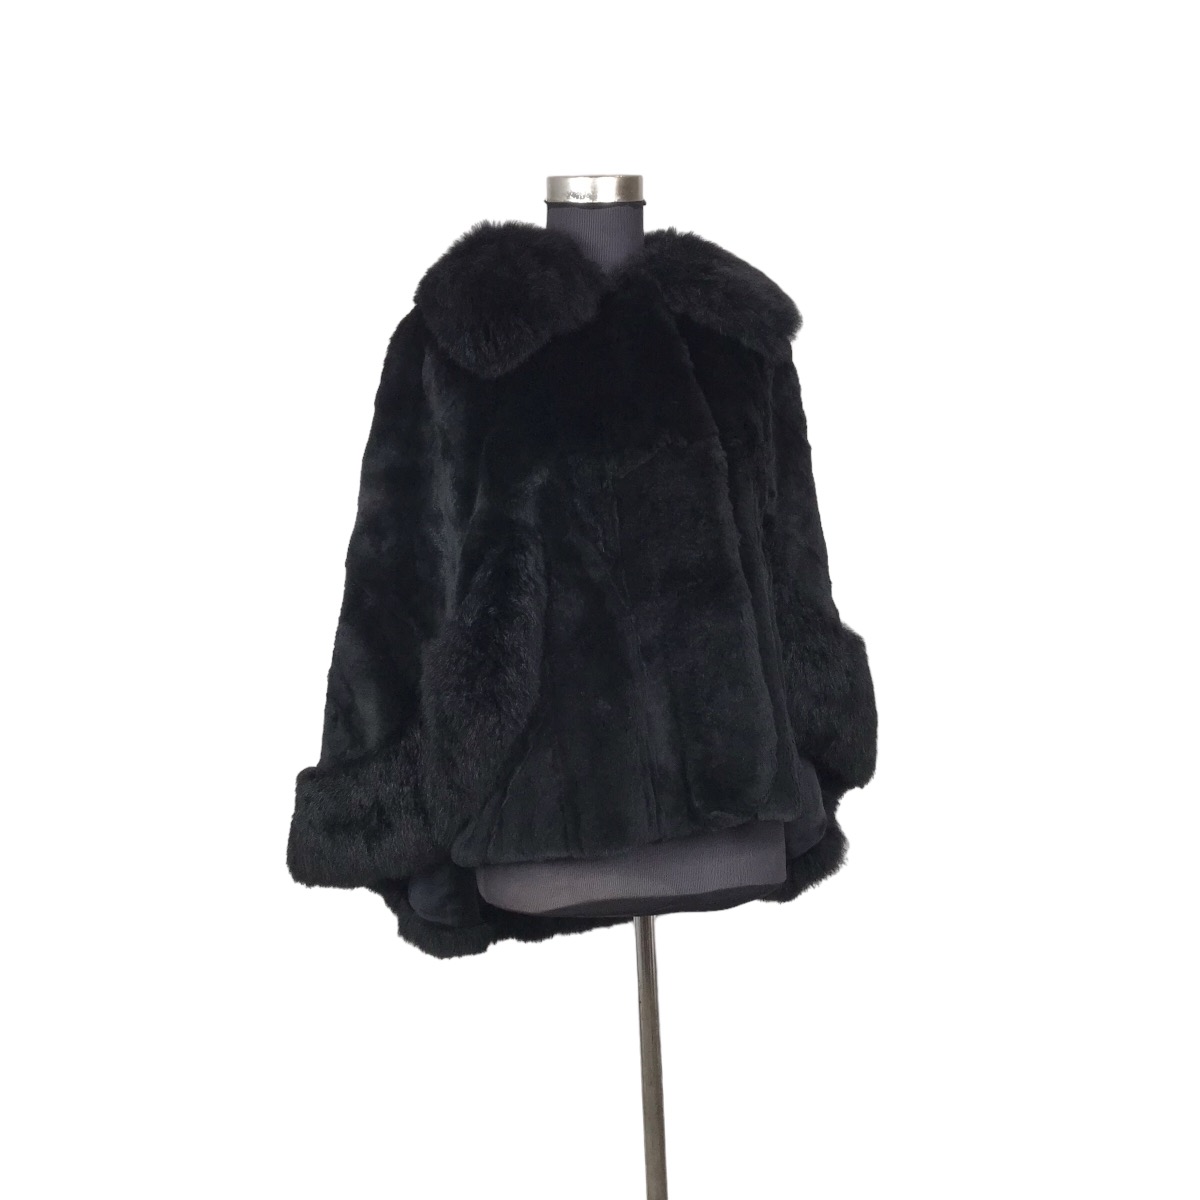 Vintage - Vintage Glamorous Comfy Fur Poncho Jacket - 1